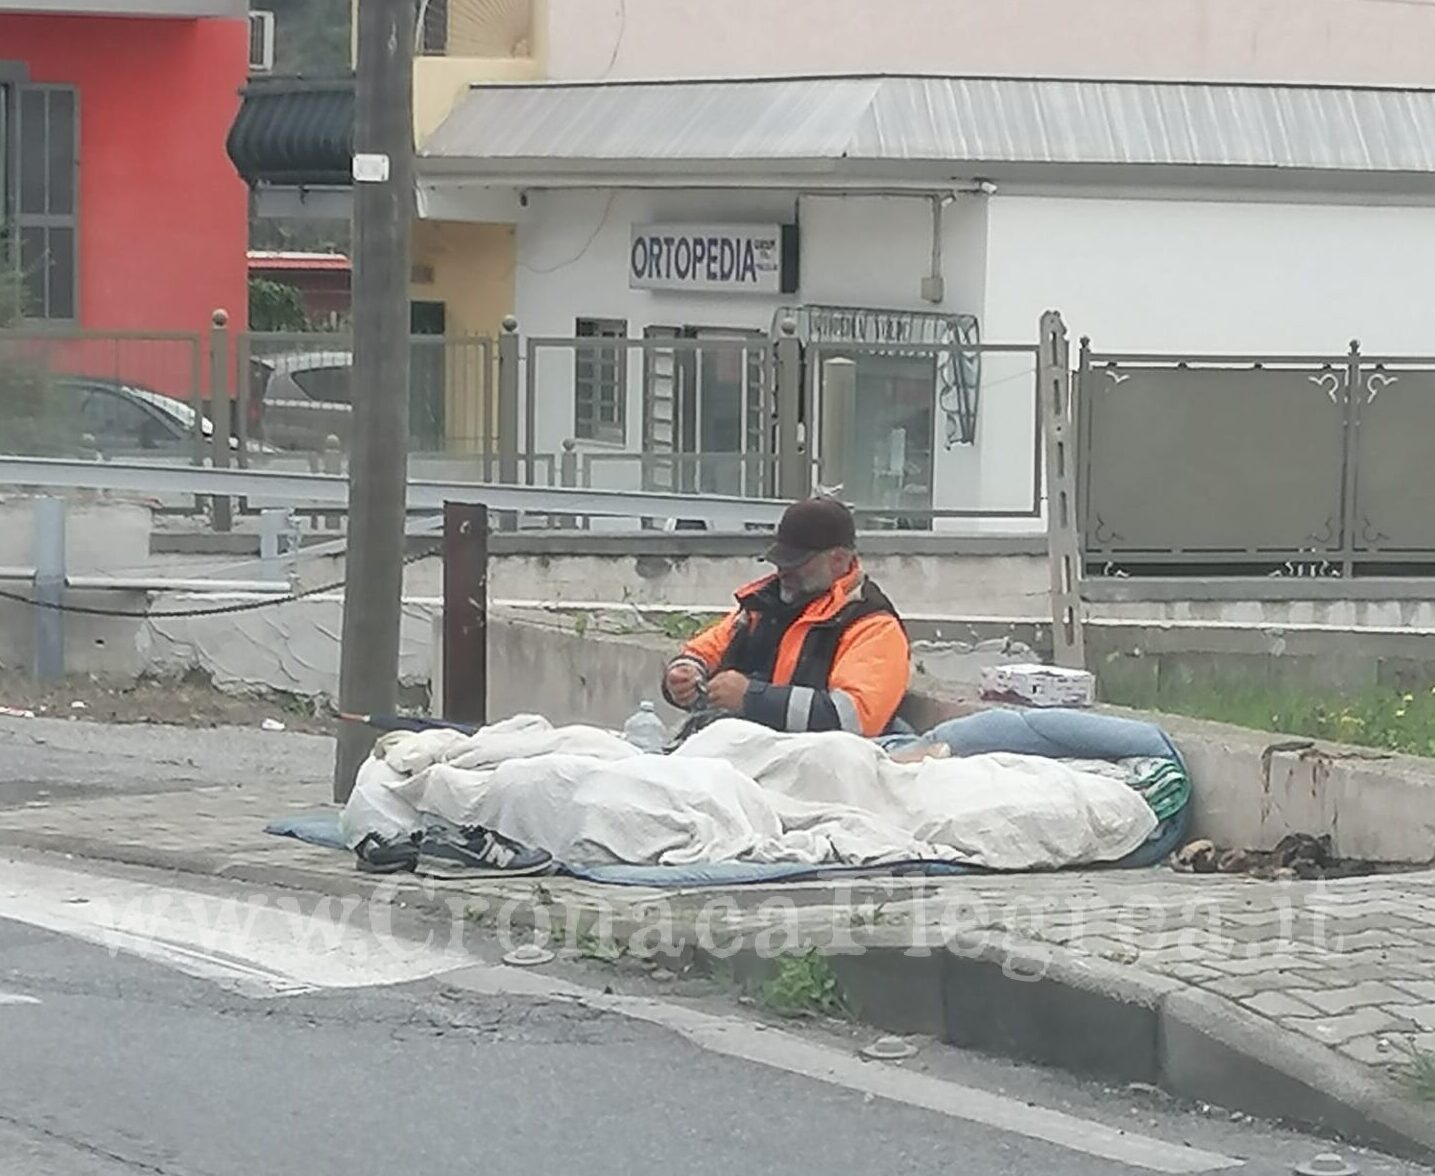 SOS da Pozzuoli «Questa persona vive su un marciapiede. Aiutatela!»